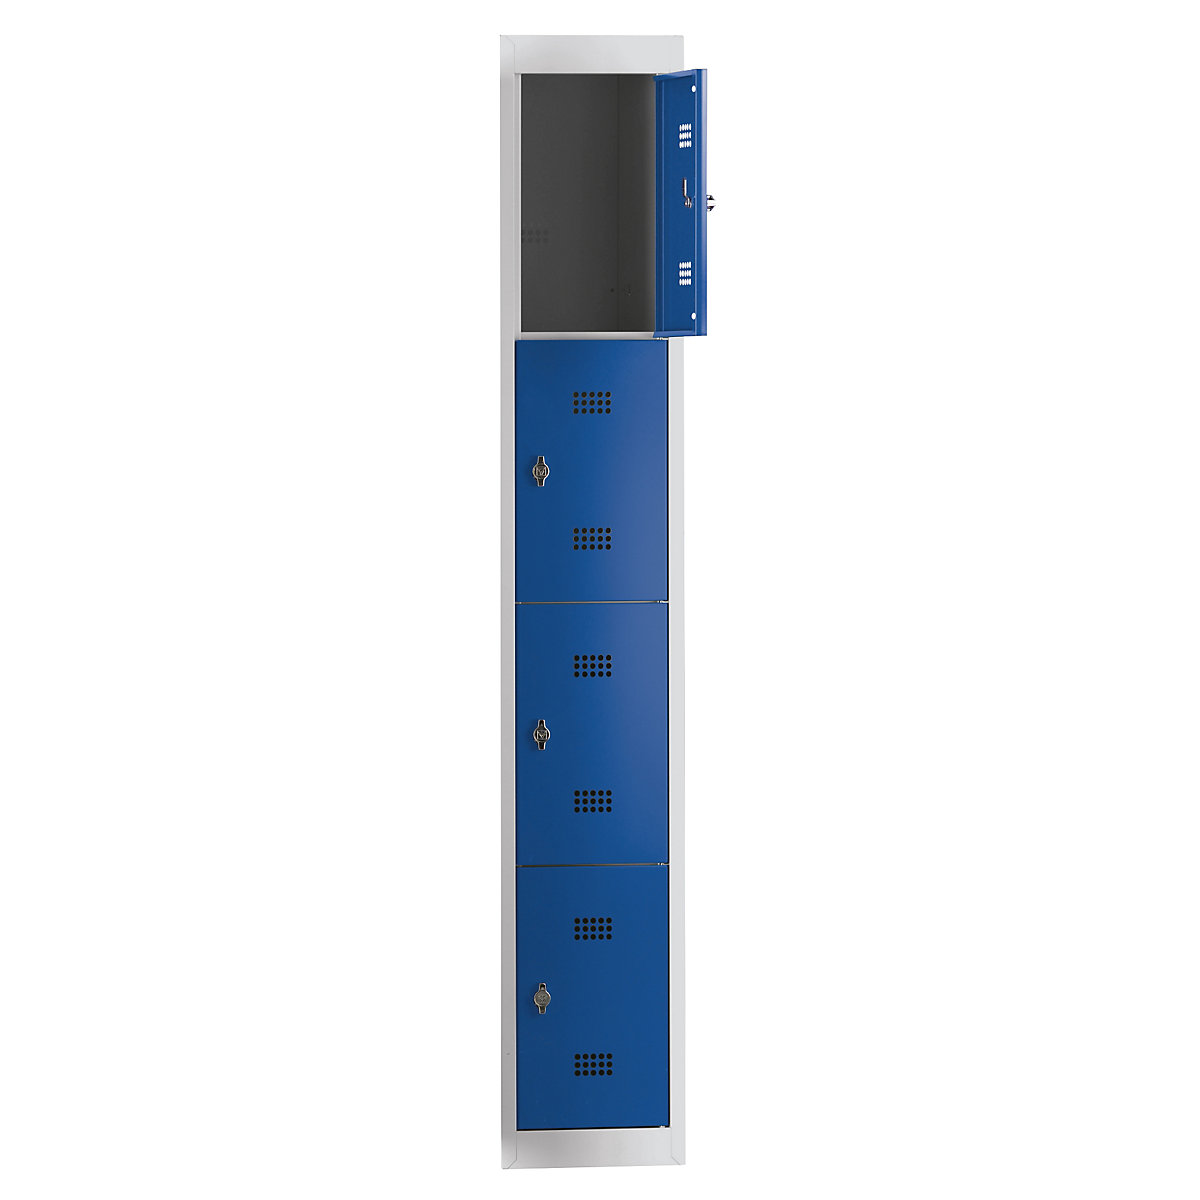 Wolf Stahlspind, zerlegt, 4 Fächer, Höhe 410 mm, Breite 300 mm, Anbauelement, lichtgrau / enzianblau